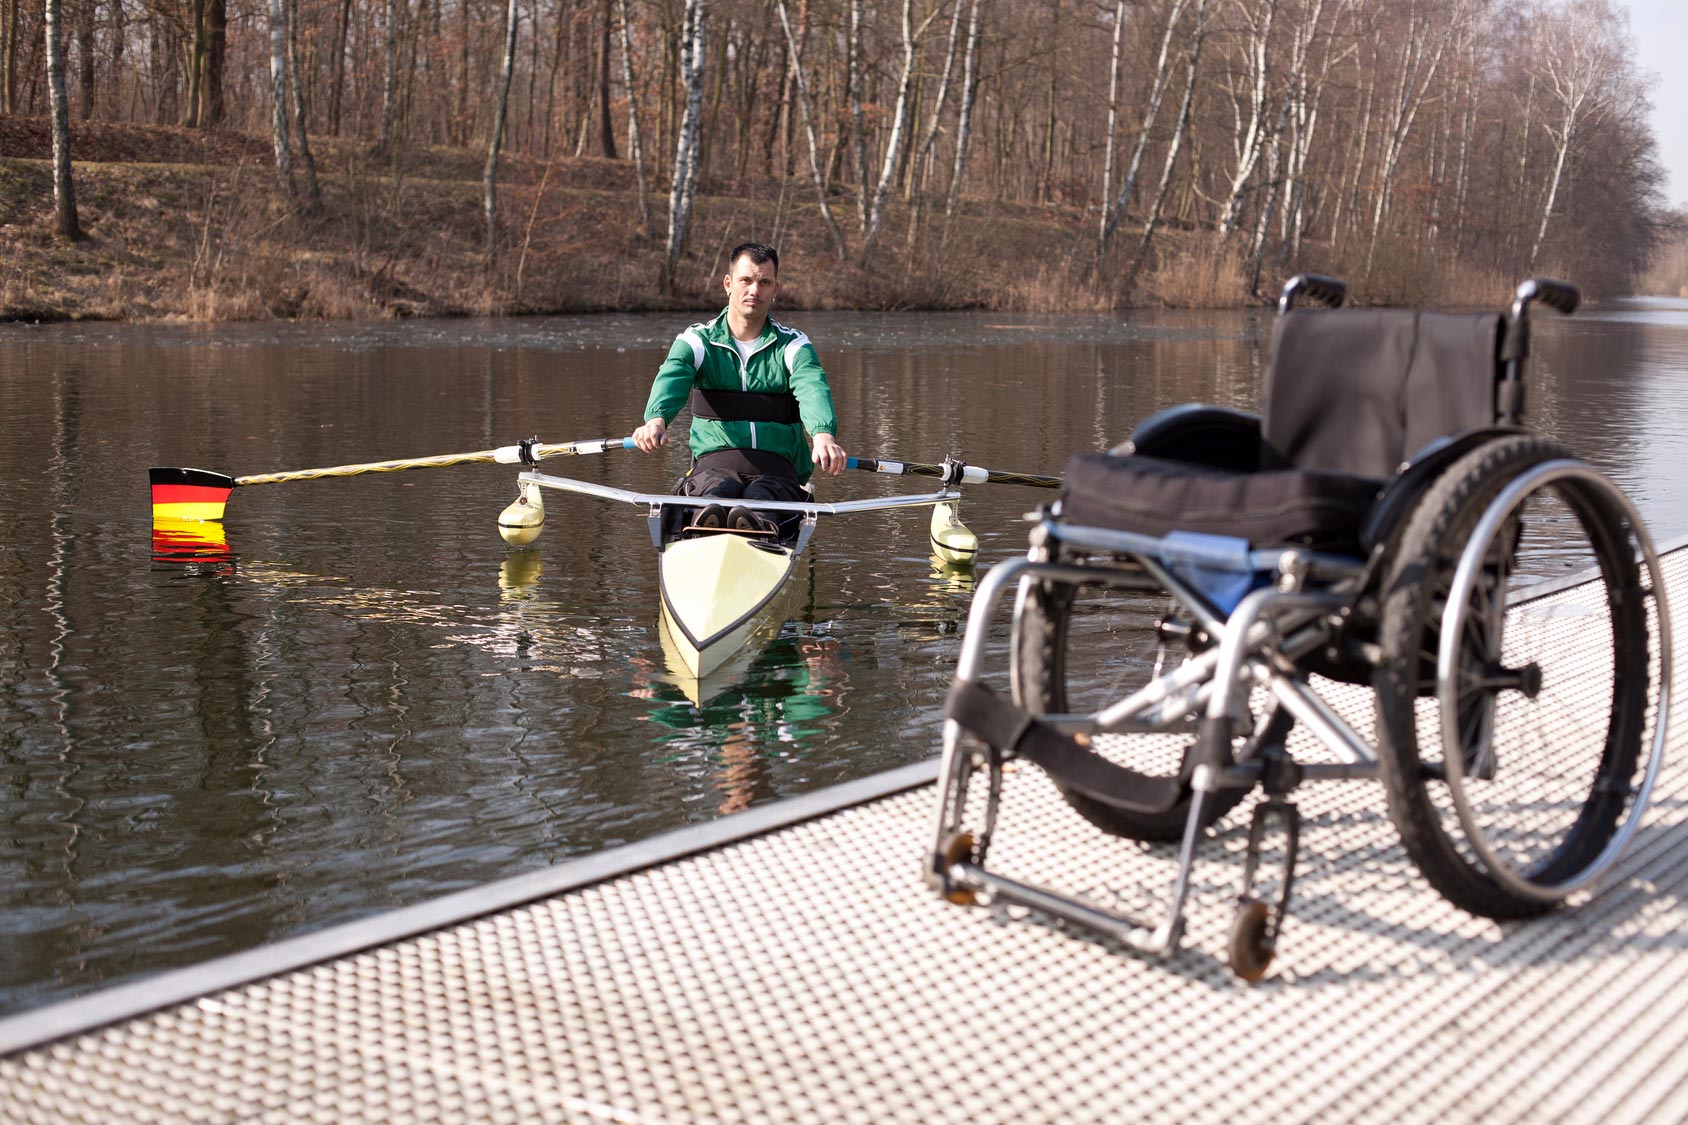 Mann beim Wassersport. Rollstuhl steht an Land.